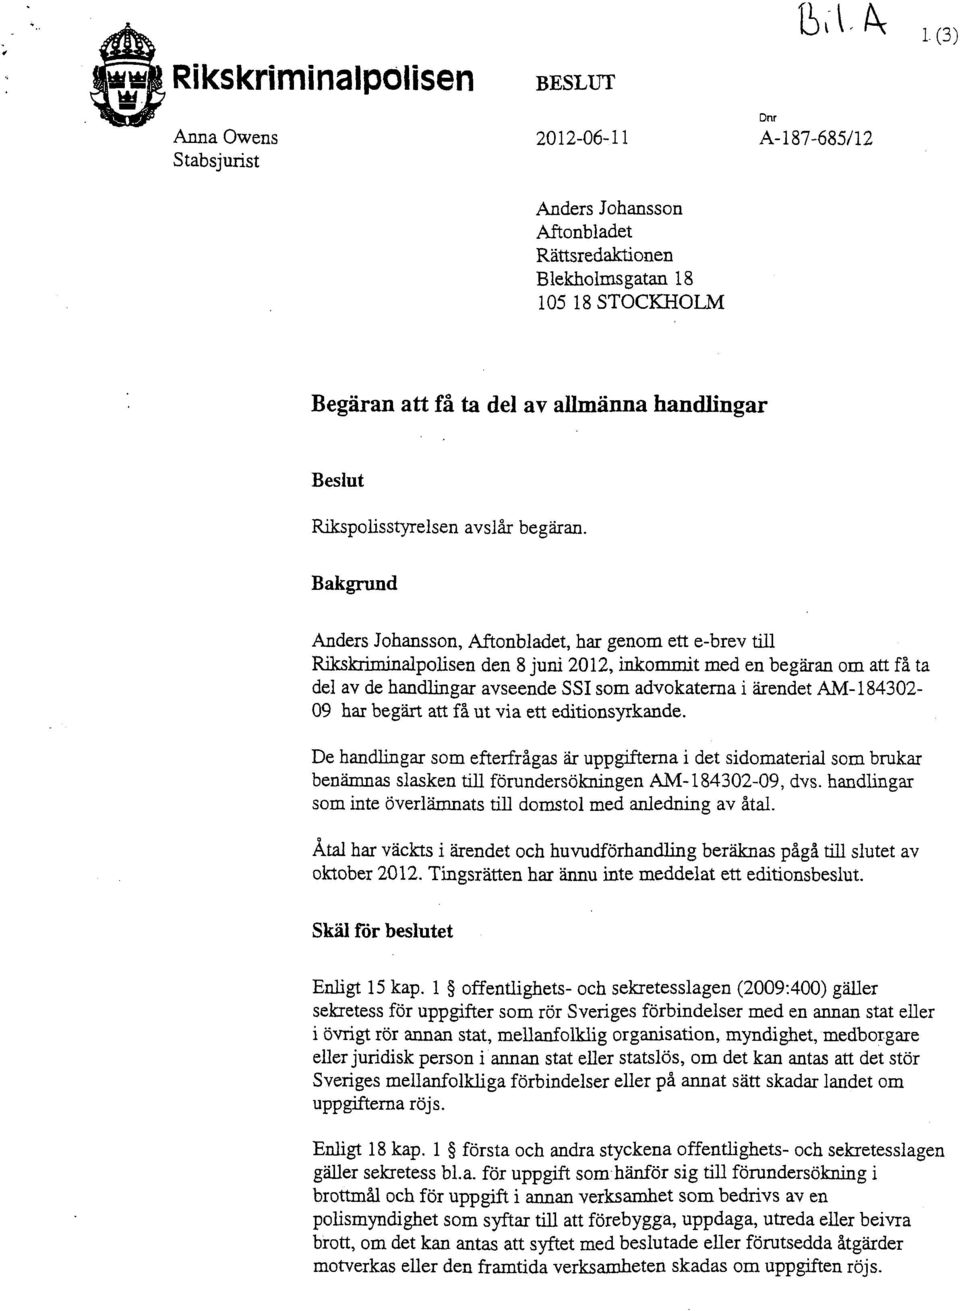 Bakgrund Anders Johansson, Aftonbladet, har genom ett e-brev till Rikskriminalpolisen den 8 juni 2012, inkommit med en begäran om att få ta del av de handlingar avseende SSI som advokaterna i ärendet